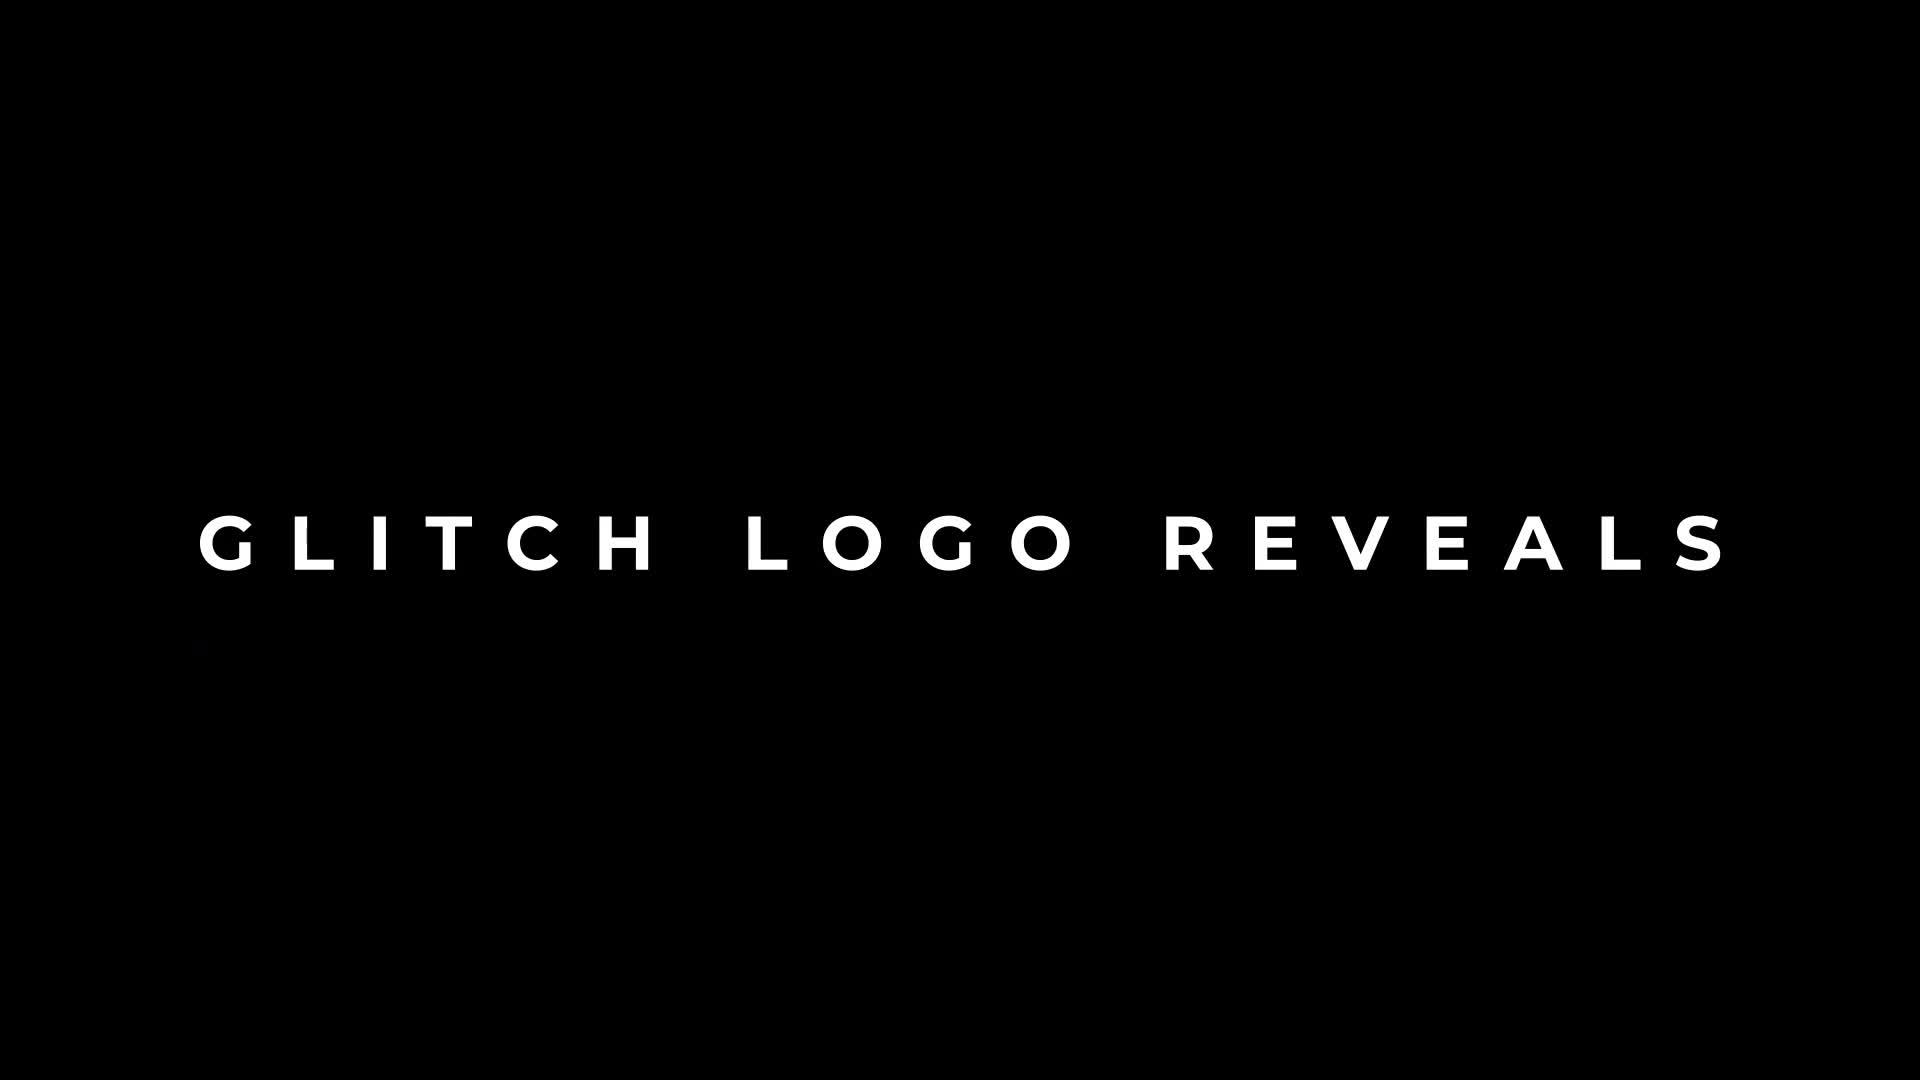 3 Glitch Logo Reveals | Premiere Pro Videohive 35408952 Premiere Pro Image 1